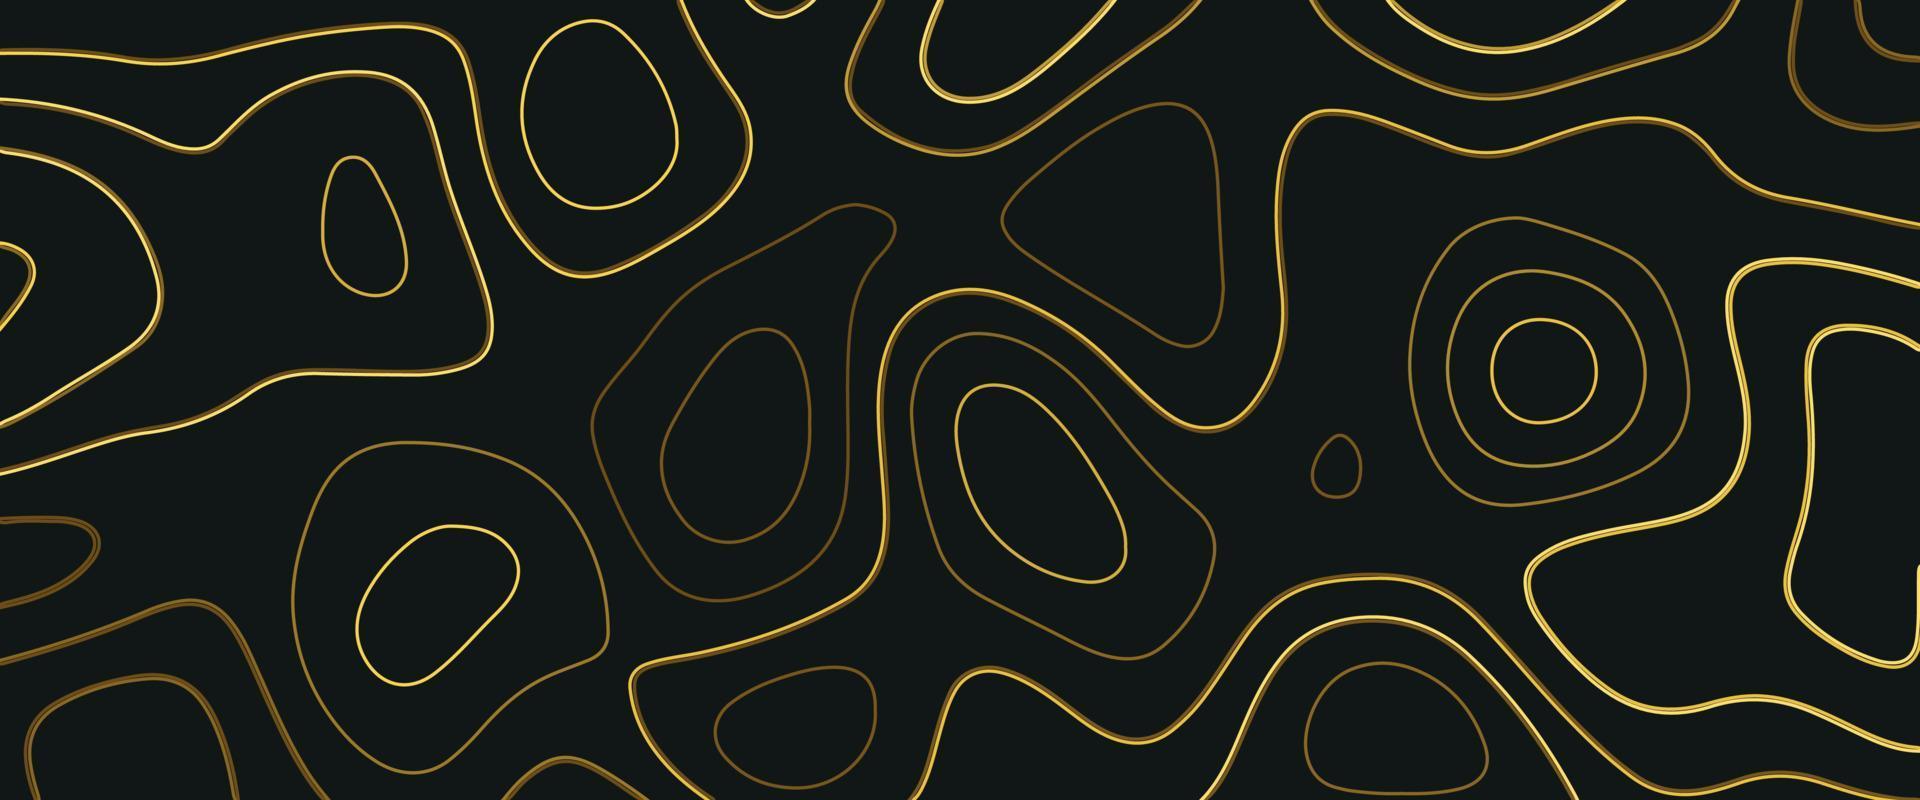 relevo topográfico. ilustração topográfica. design de estilo de corte de papel abstrato. linha de curva geométrica em camadas preta, vetor de ouro, decoração de corte de papel realista texturizada com camadas onduladas.